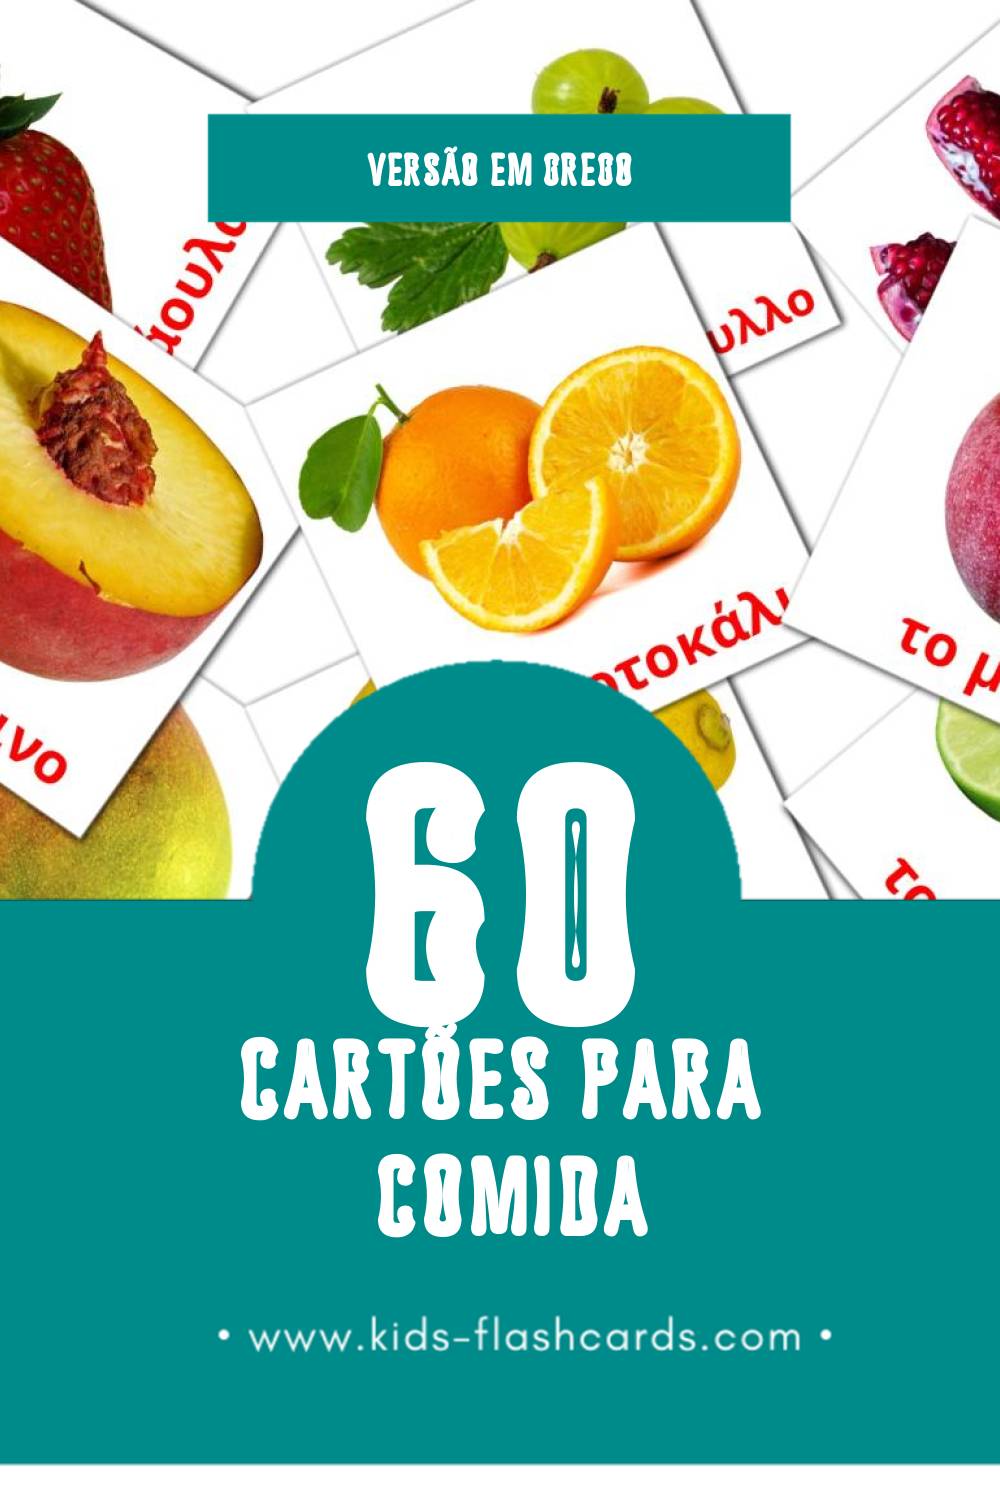 Flashcards de Φρούτα Visuais para Toddlers (60 cartões em Grego)